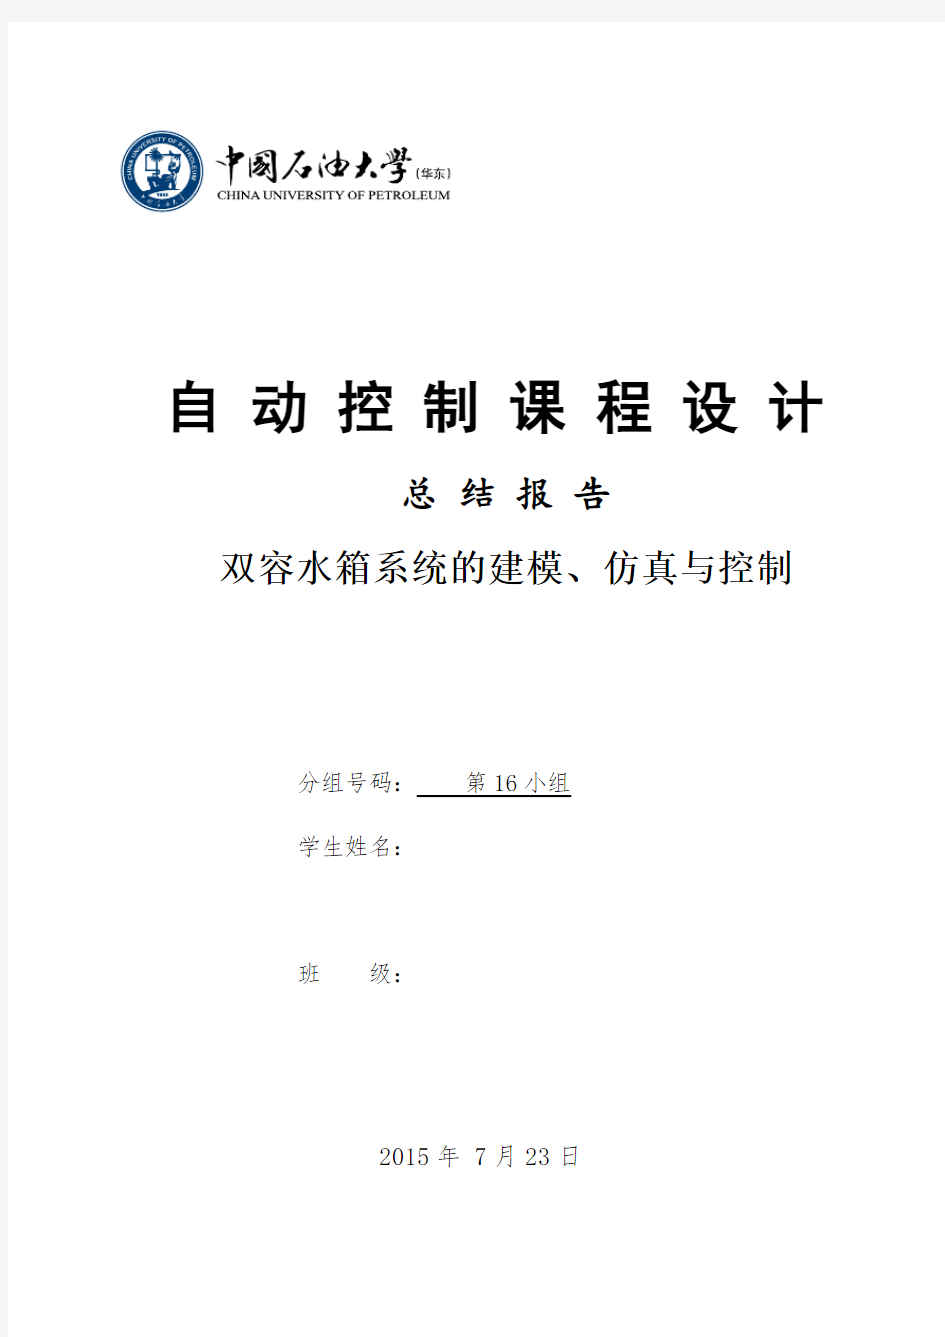 《自动控制课程设计》总结报告-中国石油大学-自动化实习